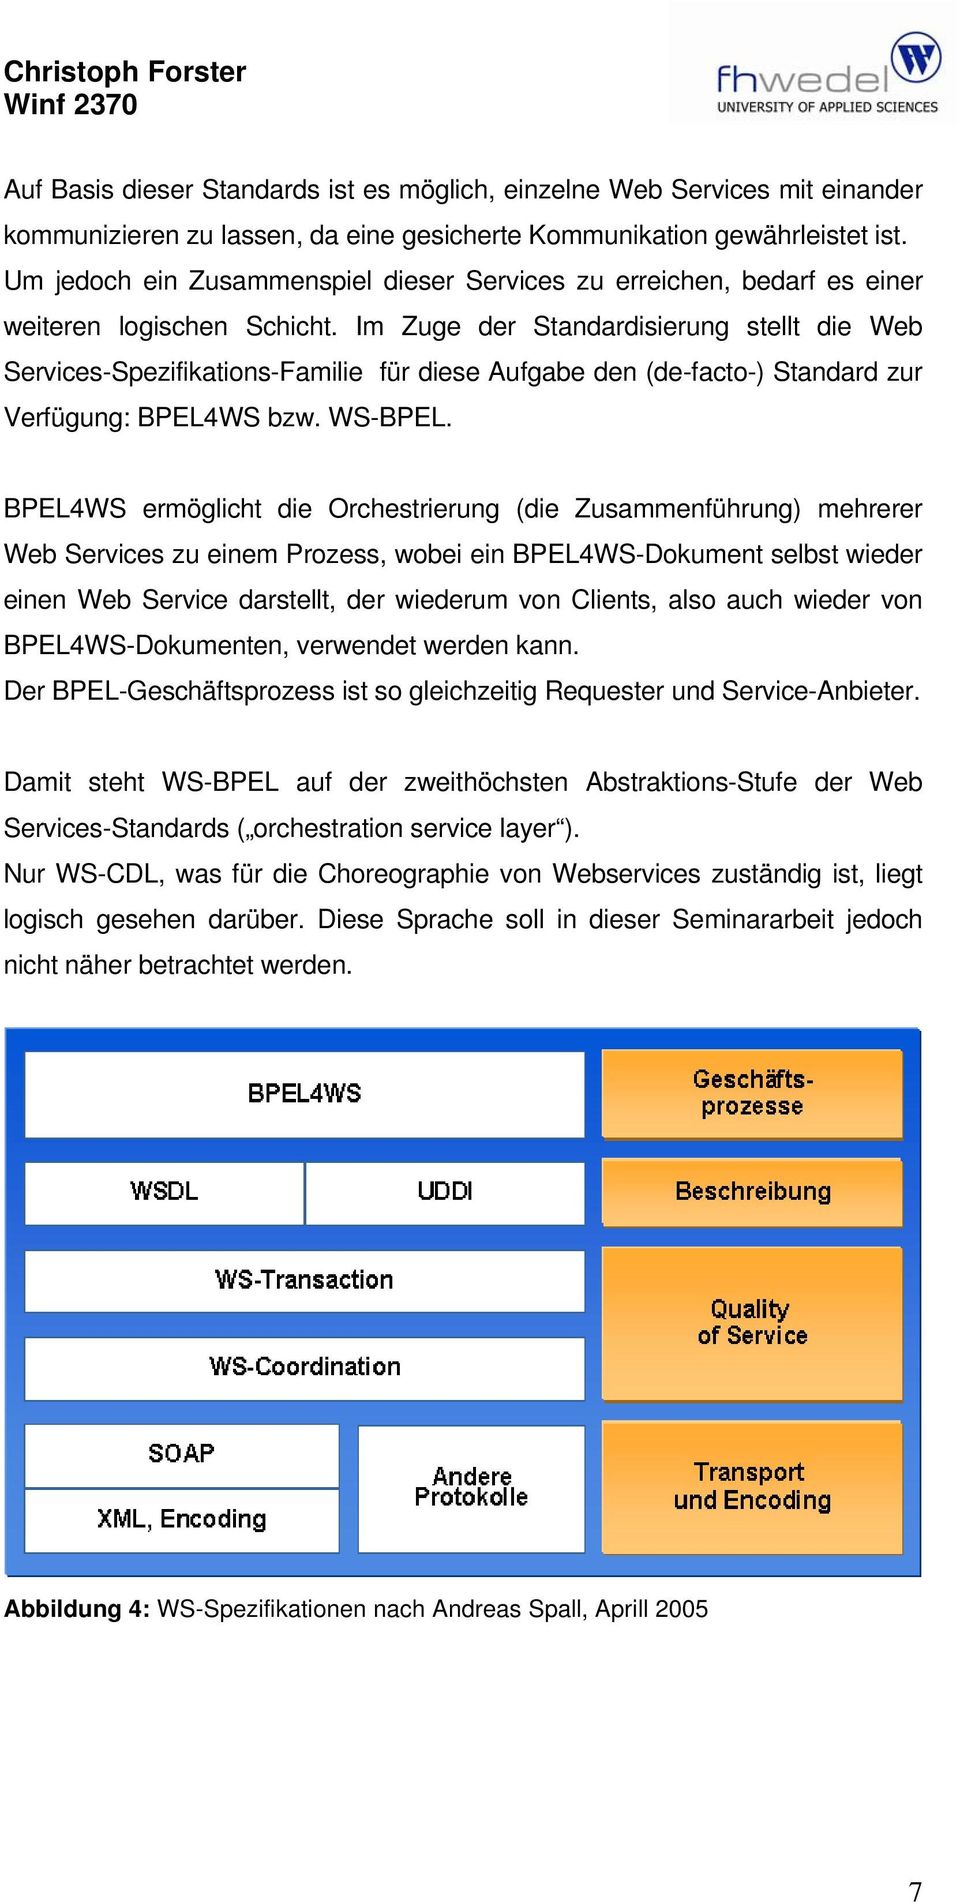 Im Zuge der Standardisierung stellt die Web Services-Spezifikations-Familie für diese Aufgabe den (de-facto-) Standard zur Verfügung: BPEL4WS bzw. WS-BPEL.